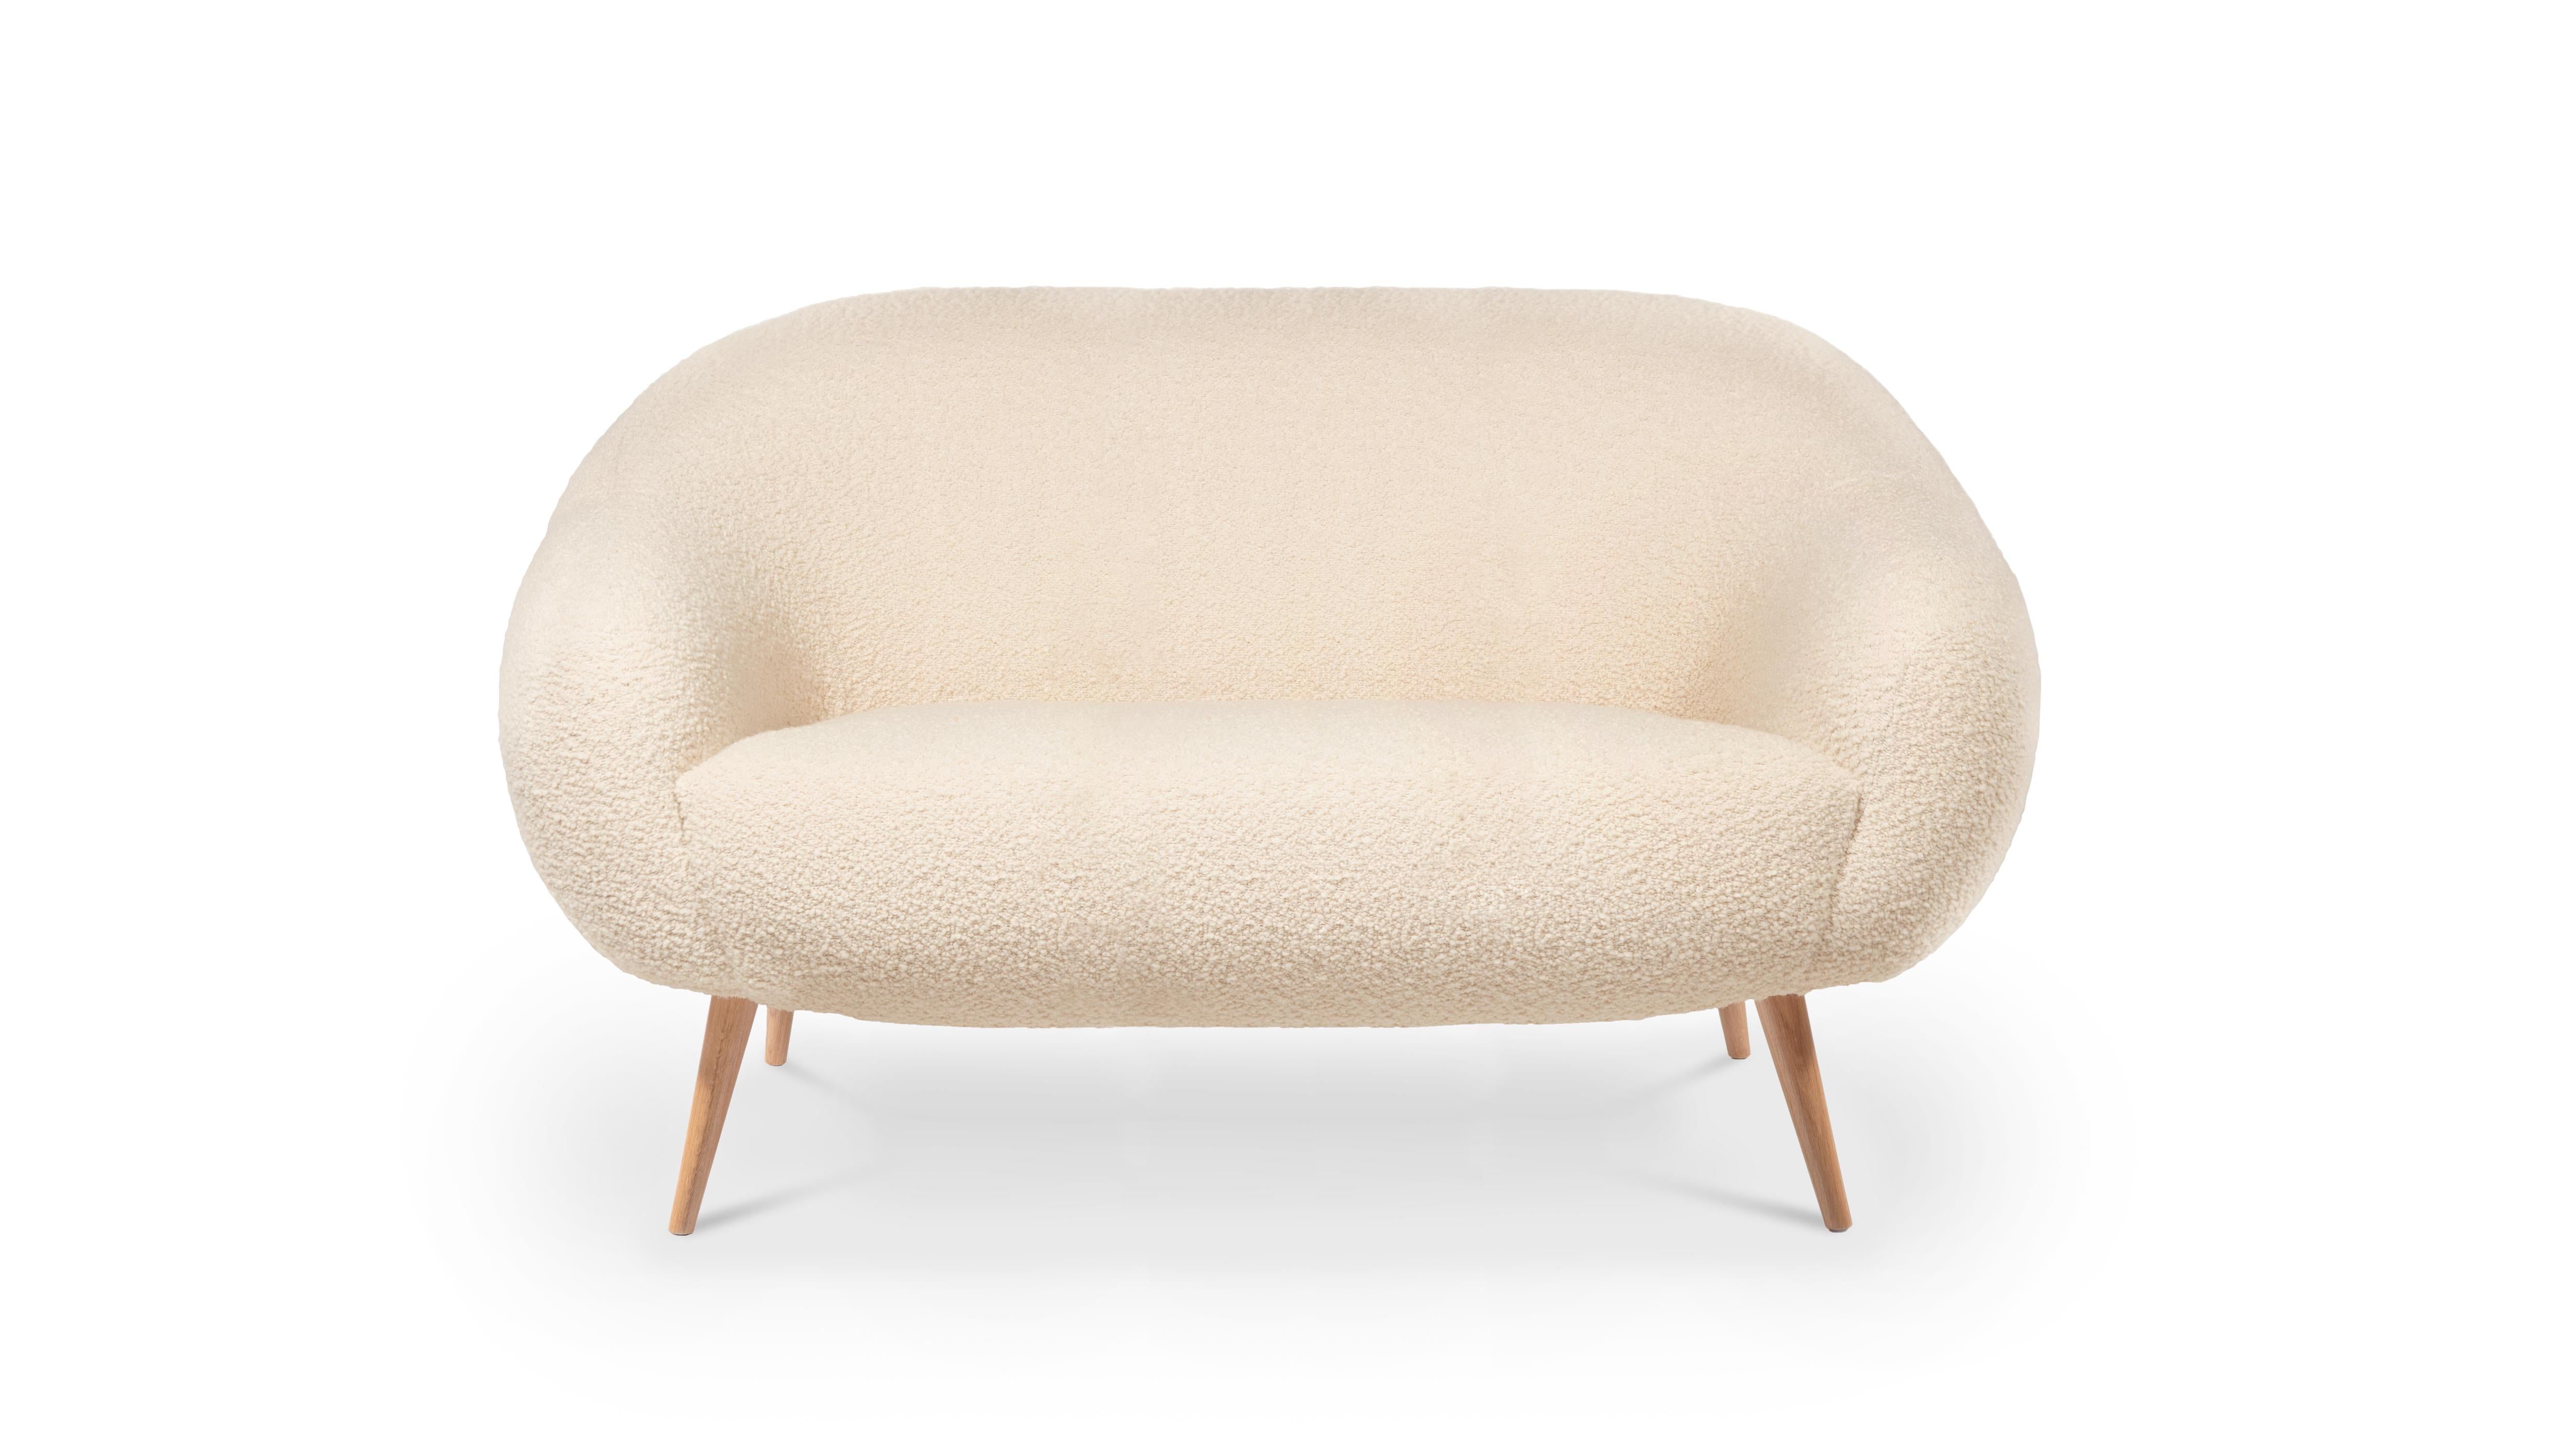 Niemeyer 2-Sitz-Sofa von InsidherLand
Abmessungen: T 92 x B 180 x H 86 cm.
MATERIALIEN: Eiche, gebürstetes Messing, InsidherLand Woollen Ref. 1 Stoff.
56 kg.
Erhältlich in verschiedenen Stoffen.

Das Niemeyer-Sofa ist nach dem brasilianischen